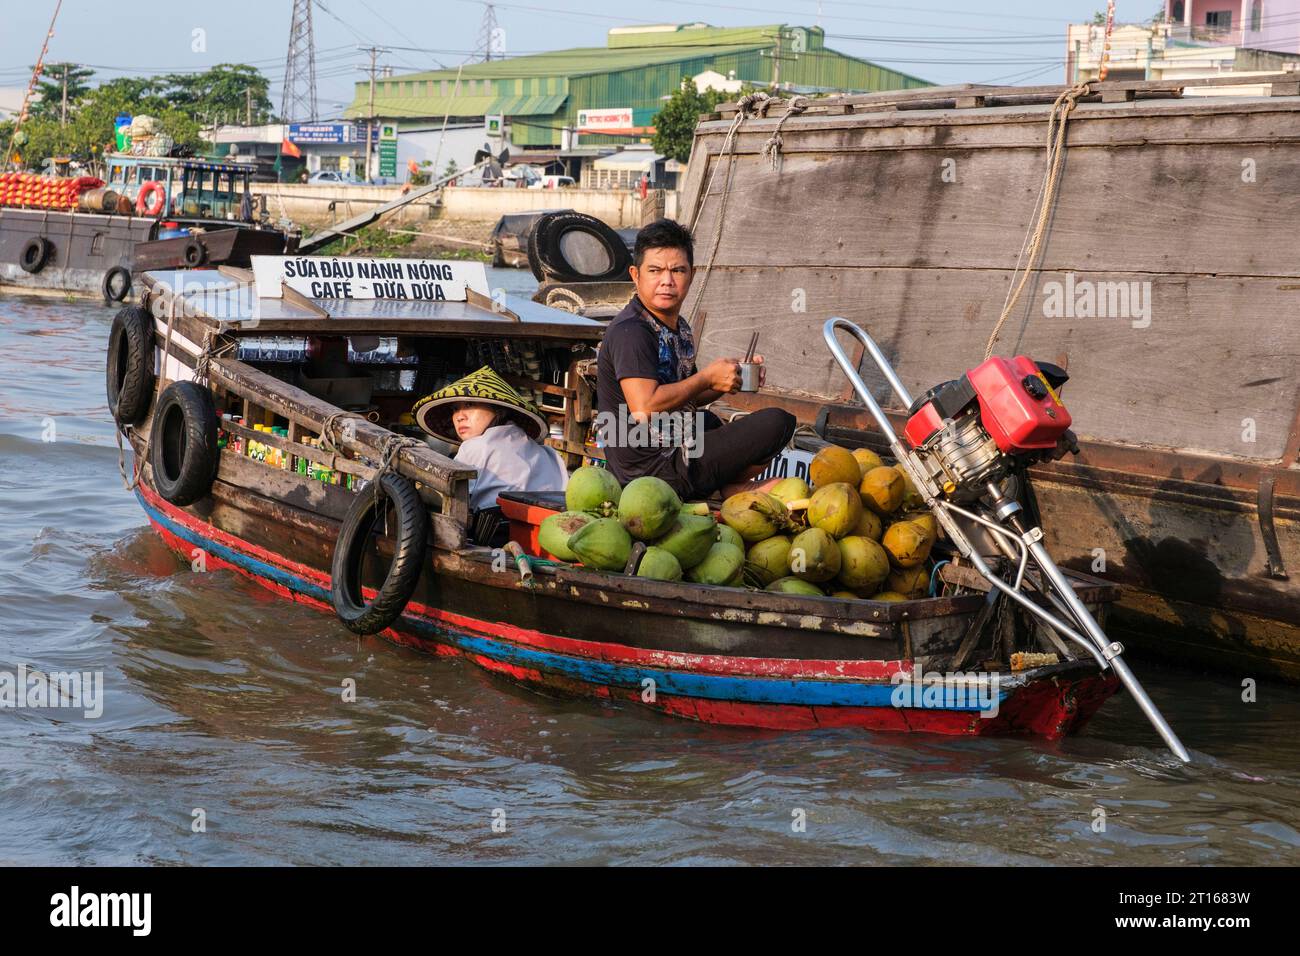 Scène du marché flottant de Fong Dien, près de CAN Tho, Vietnam. Le fournisseur d'articles pour le petit déjeuner circule parmi les grands bateaux transportant des fruits et légumes. Banque D'Images